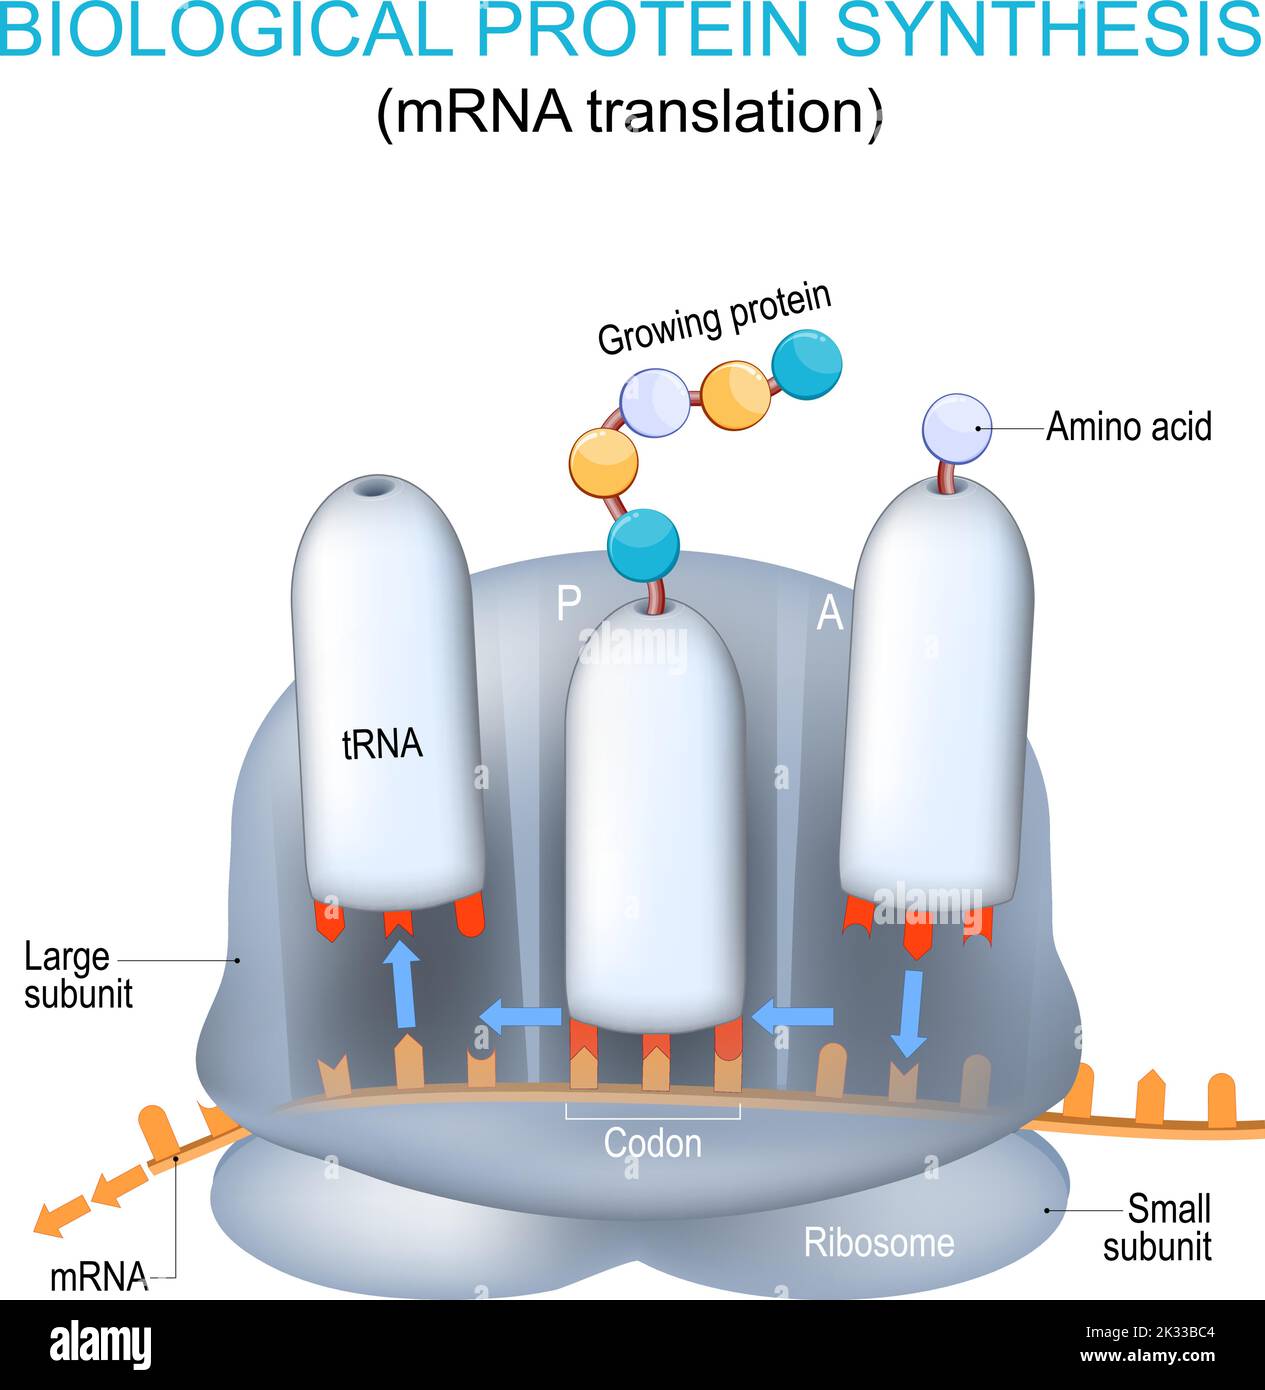 Structure et anatomie du ribosome. Synthèse des protéines biologiques. Traduction de l'ARNm et synthèse des protéines par un ribosome. ARNt et ARNm Illustration de Vecteur